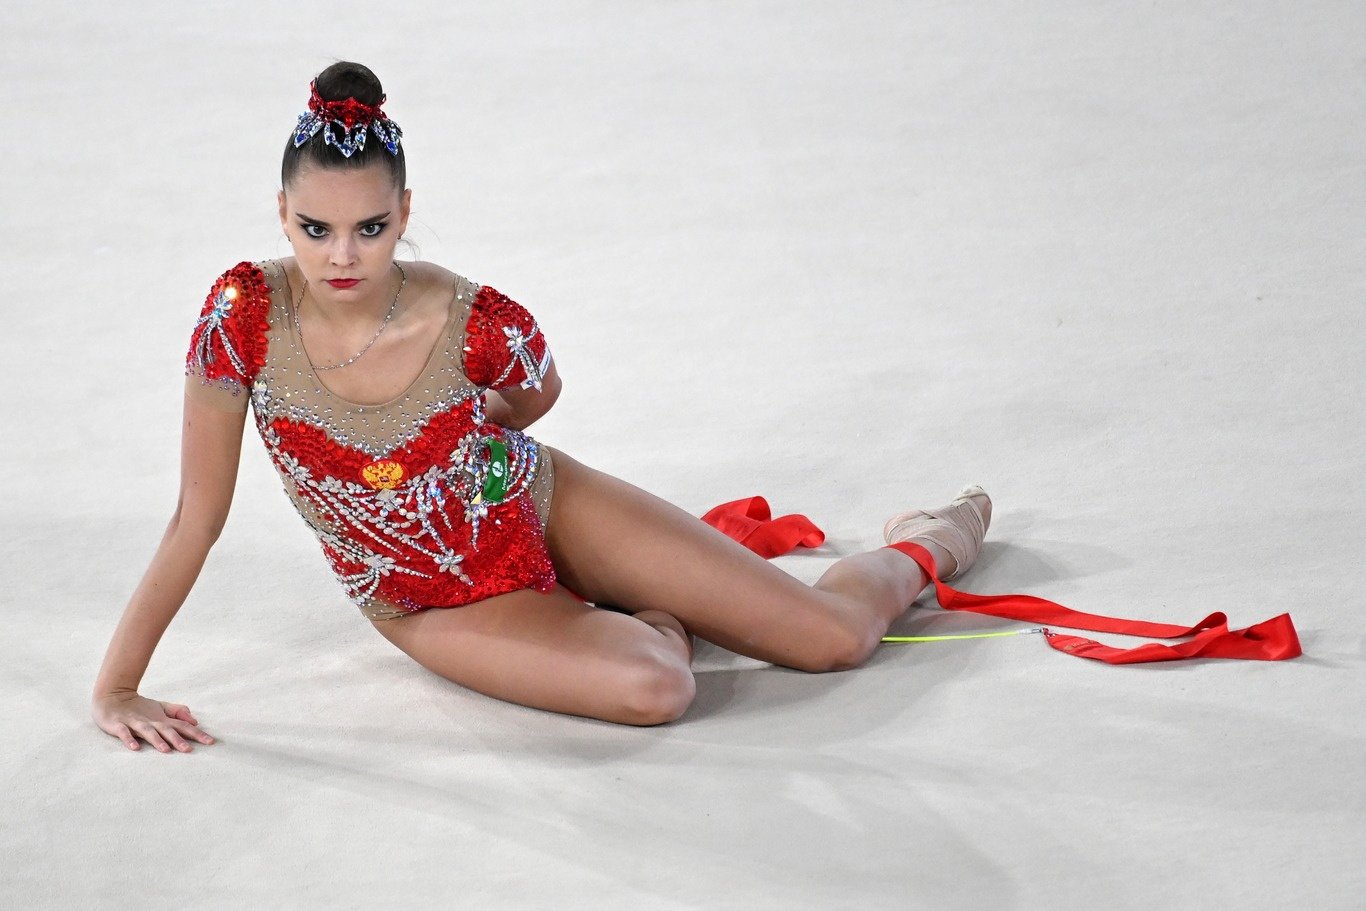 Дина Аверина выиграла многоборье на чемпионате России